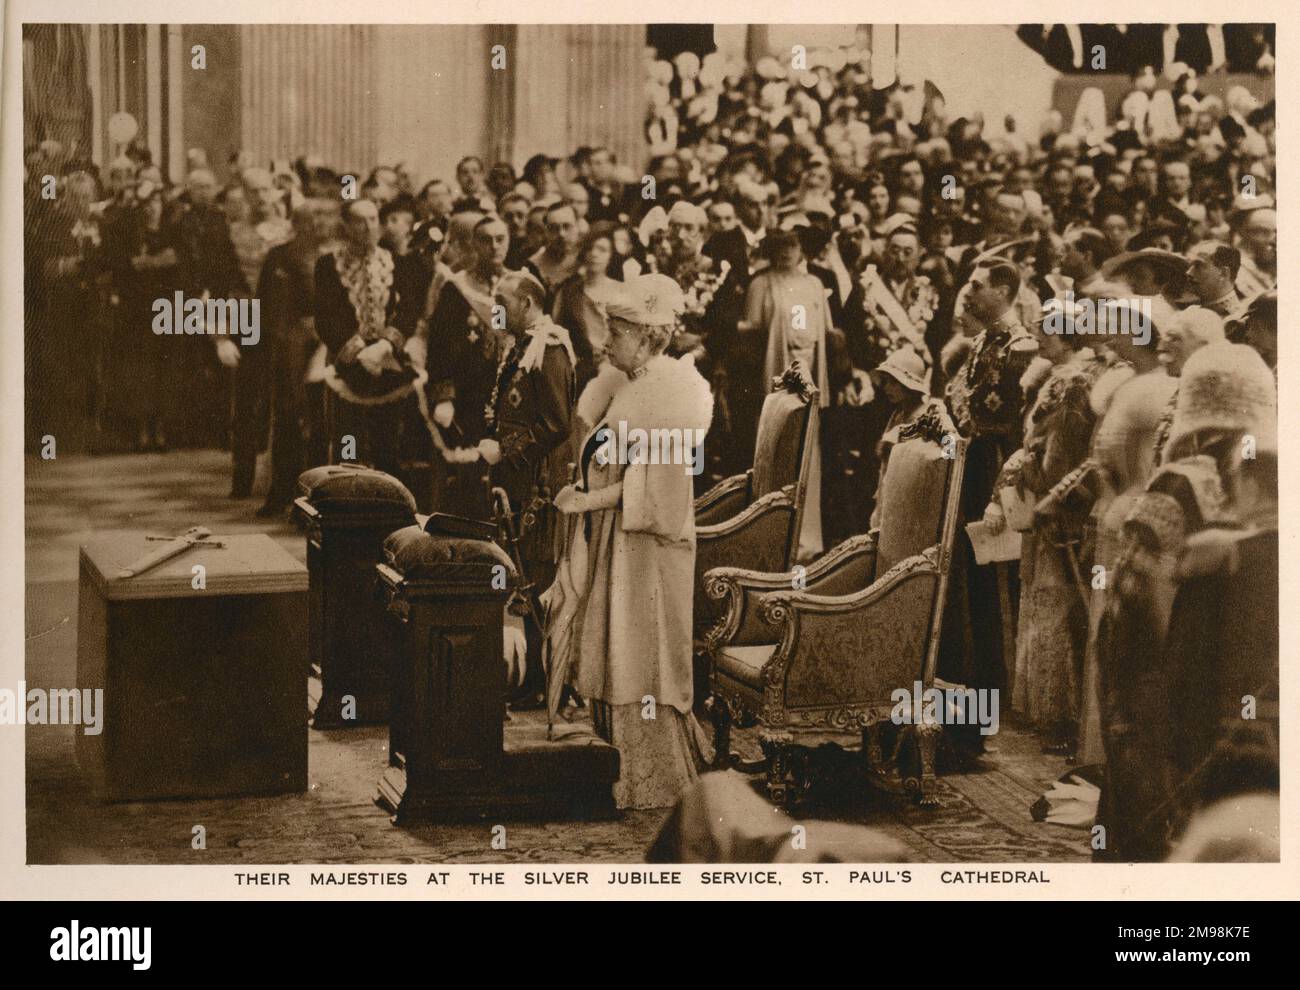 Le roi George V et la reine Mary dans la cathédrale Saint-Paul, prenant part au service d'action de grâce du Jubilé royal d'argent, le 6 mai 1935, pour célébrer 25 ans sur le trône britannique. Banque D'Images